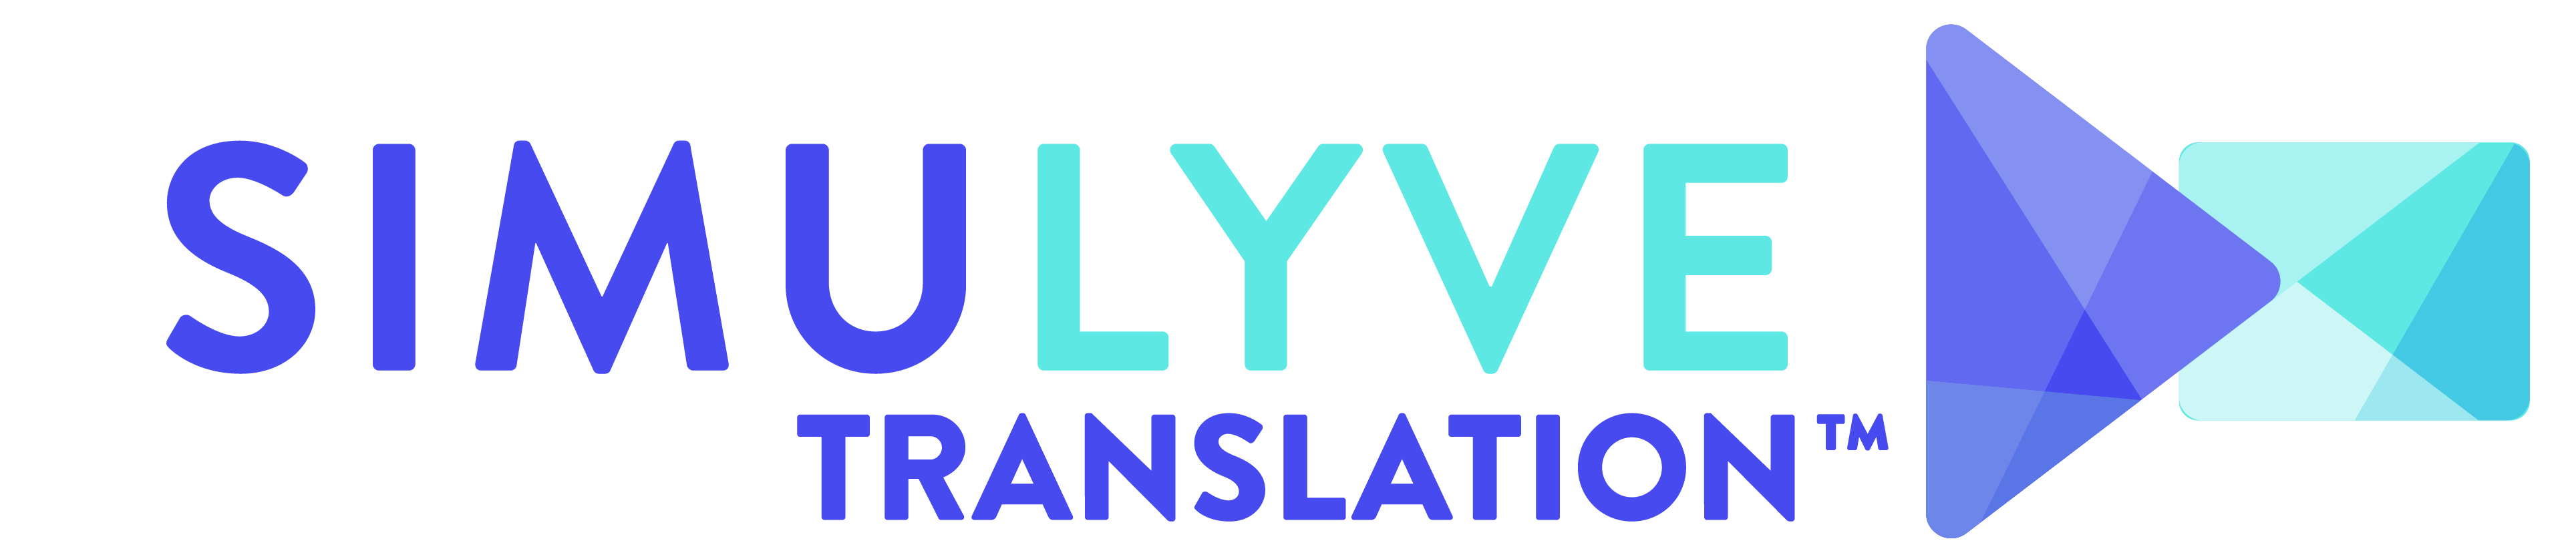 SimuLyve translation